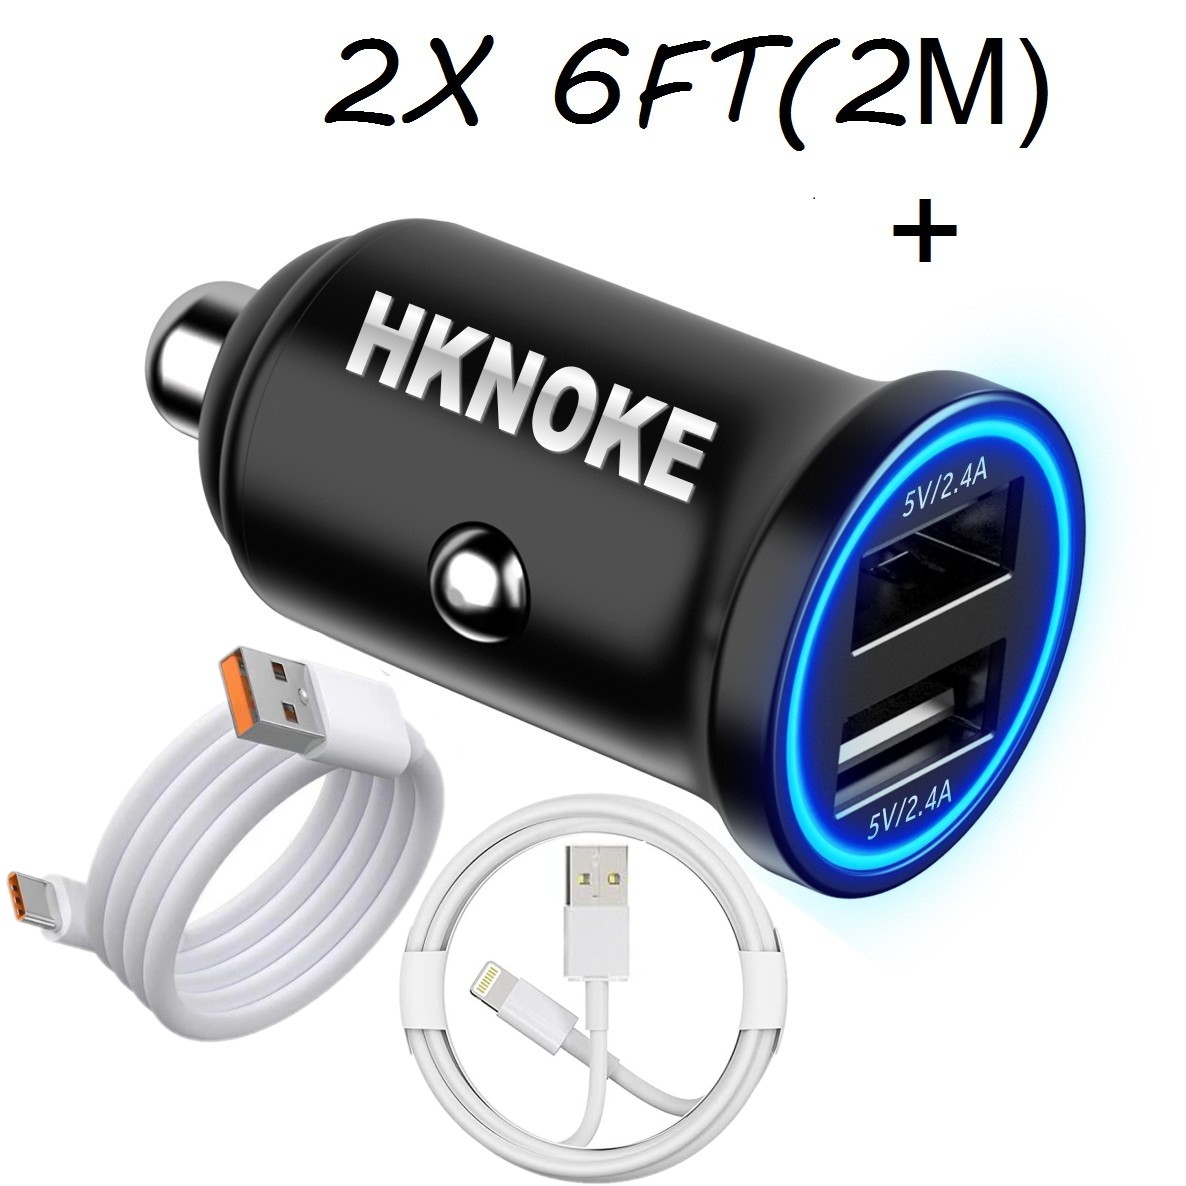 Hknoke Full 4.8 Высококачественные автомобильные зарядные устройства Сигарета REAL быстрая адаптер -адаптер автомобиля с 2 м 6 -футовым кабелем для Android Phone iPhone